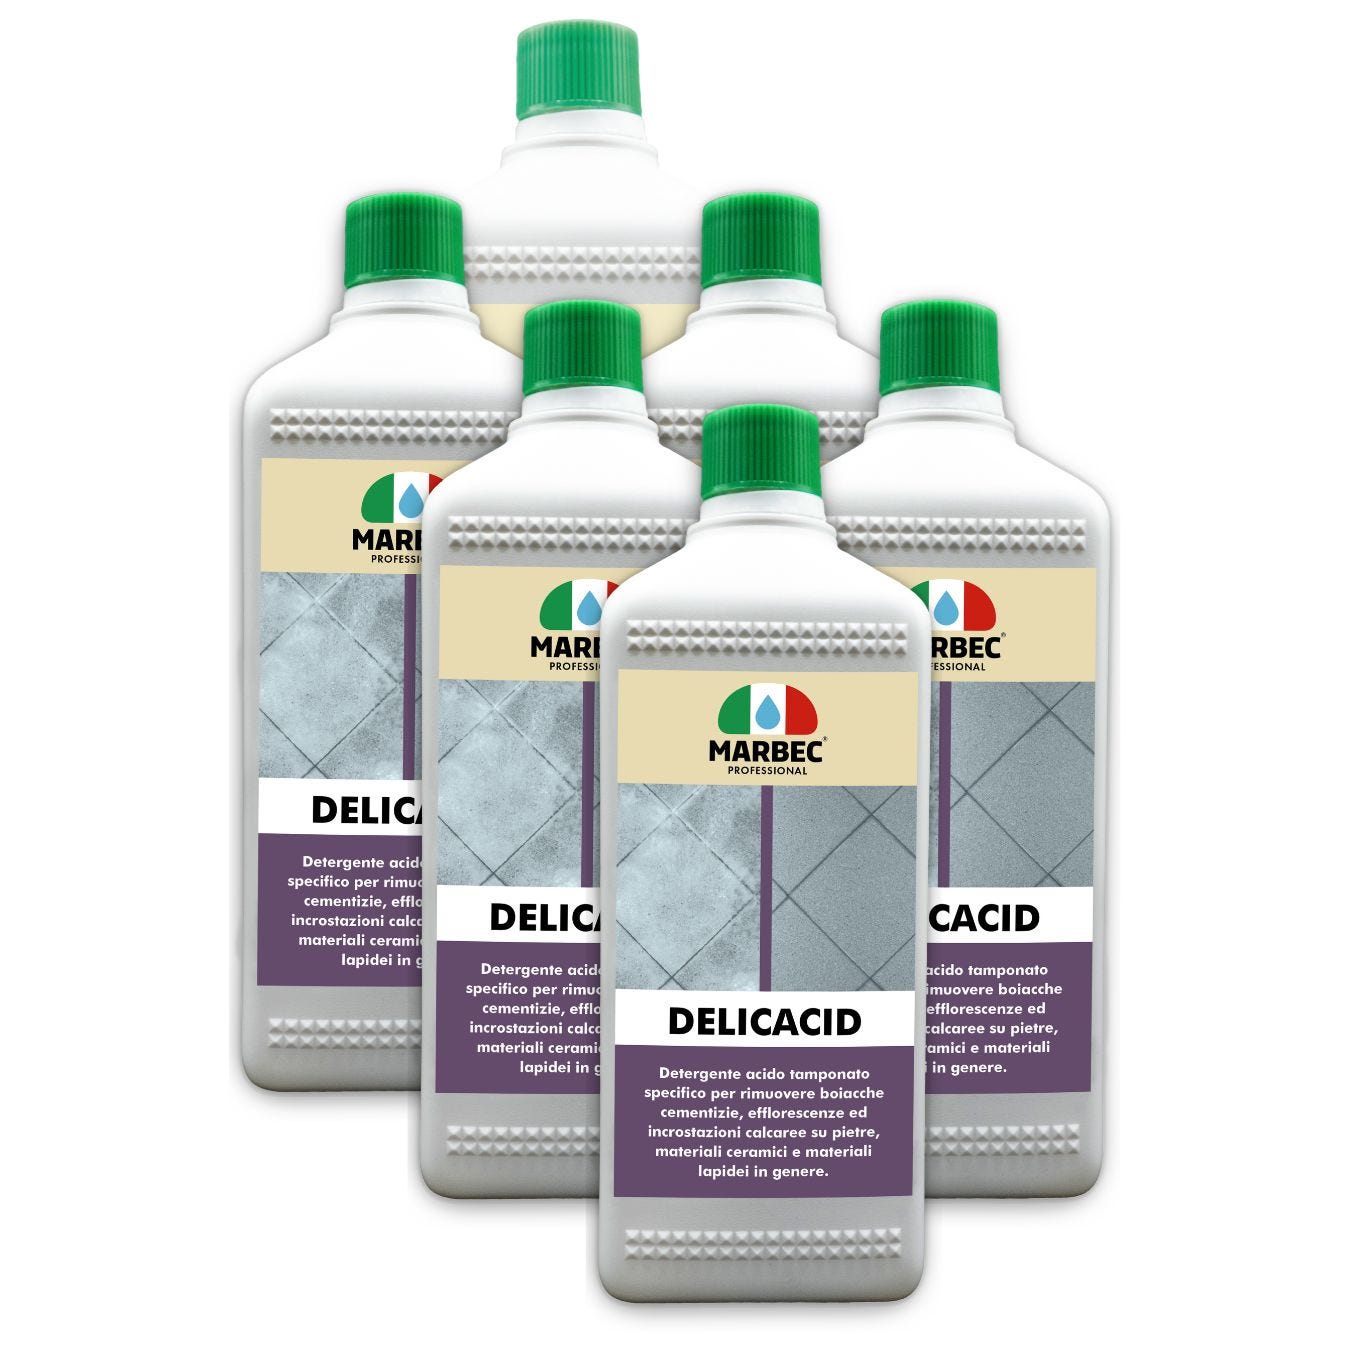 DELICACID - Acido tamponato per pietre e materiali lapidei